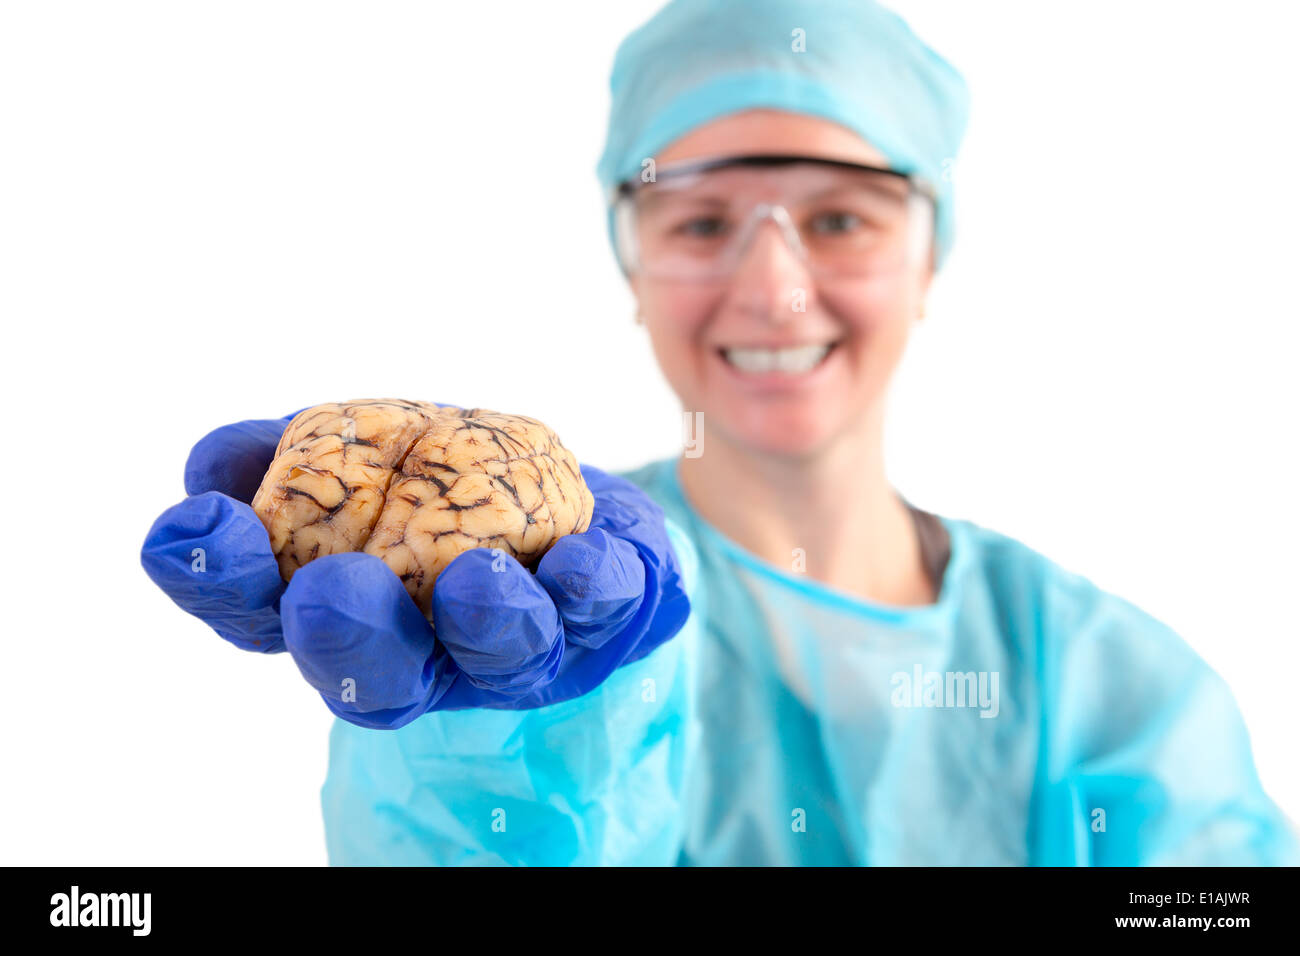 Pathologiste femelle ou technologiste médical tenant un cerveau de vache dans sa main étendue vers l'appareil photo, isolated on white Banque D'Images